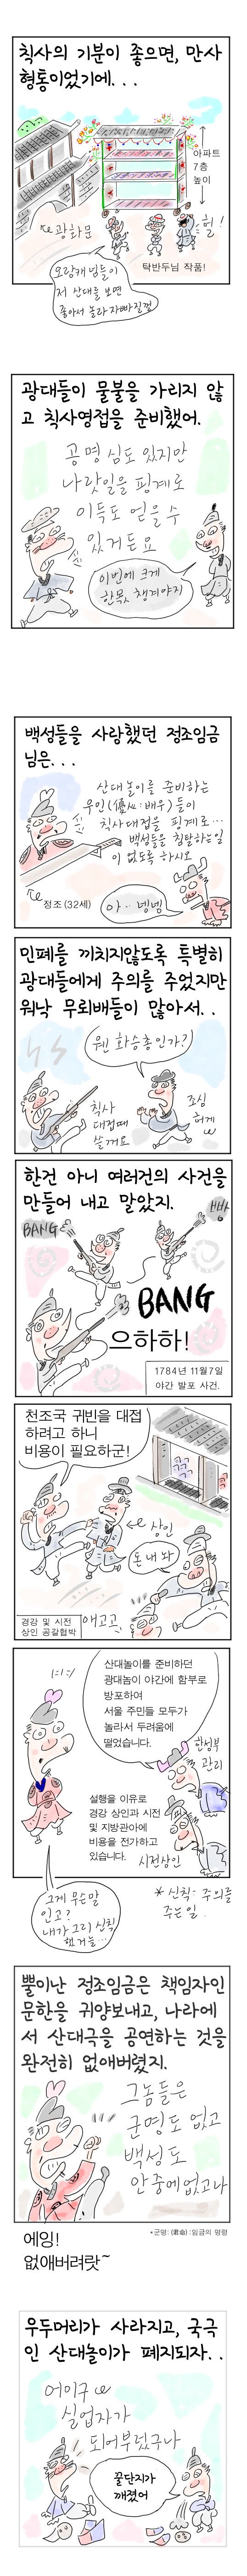 [역사툰] 史(사)람 이야기 20화: 조선 제일 춤꾼, 탁문한
